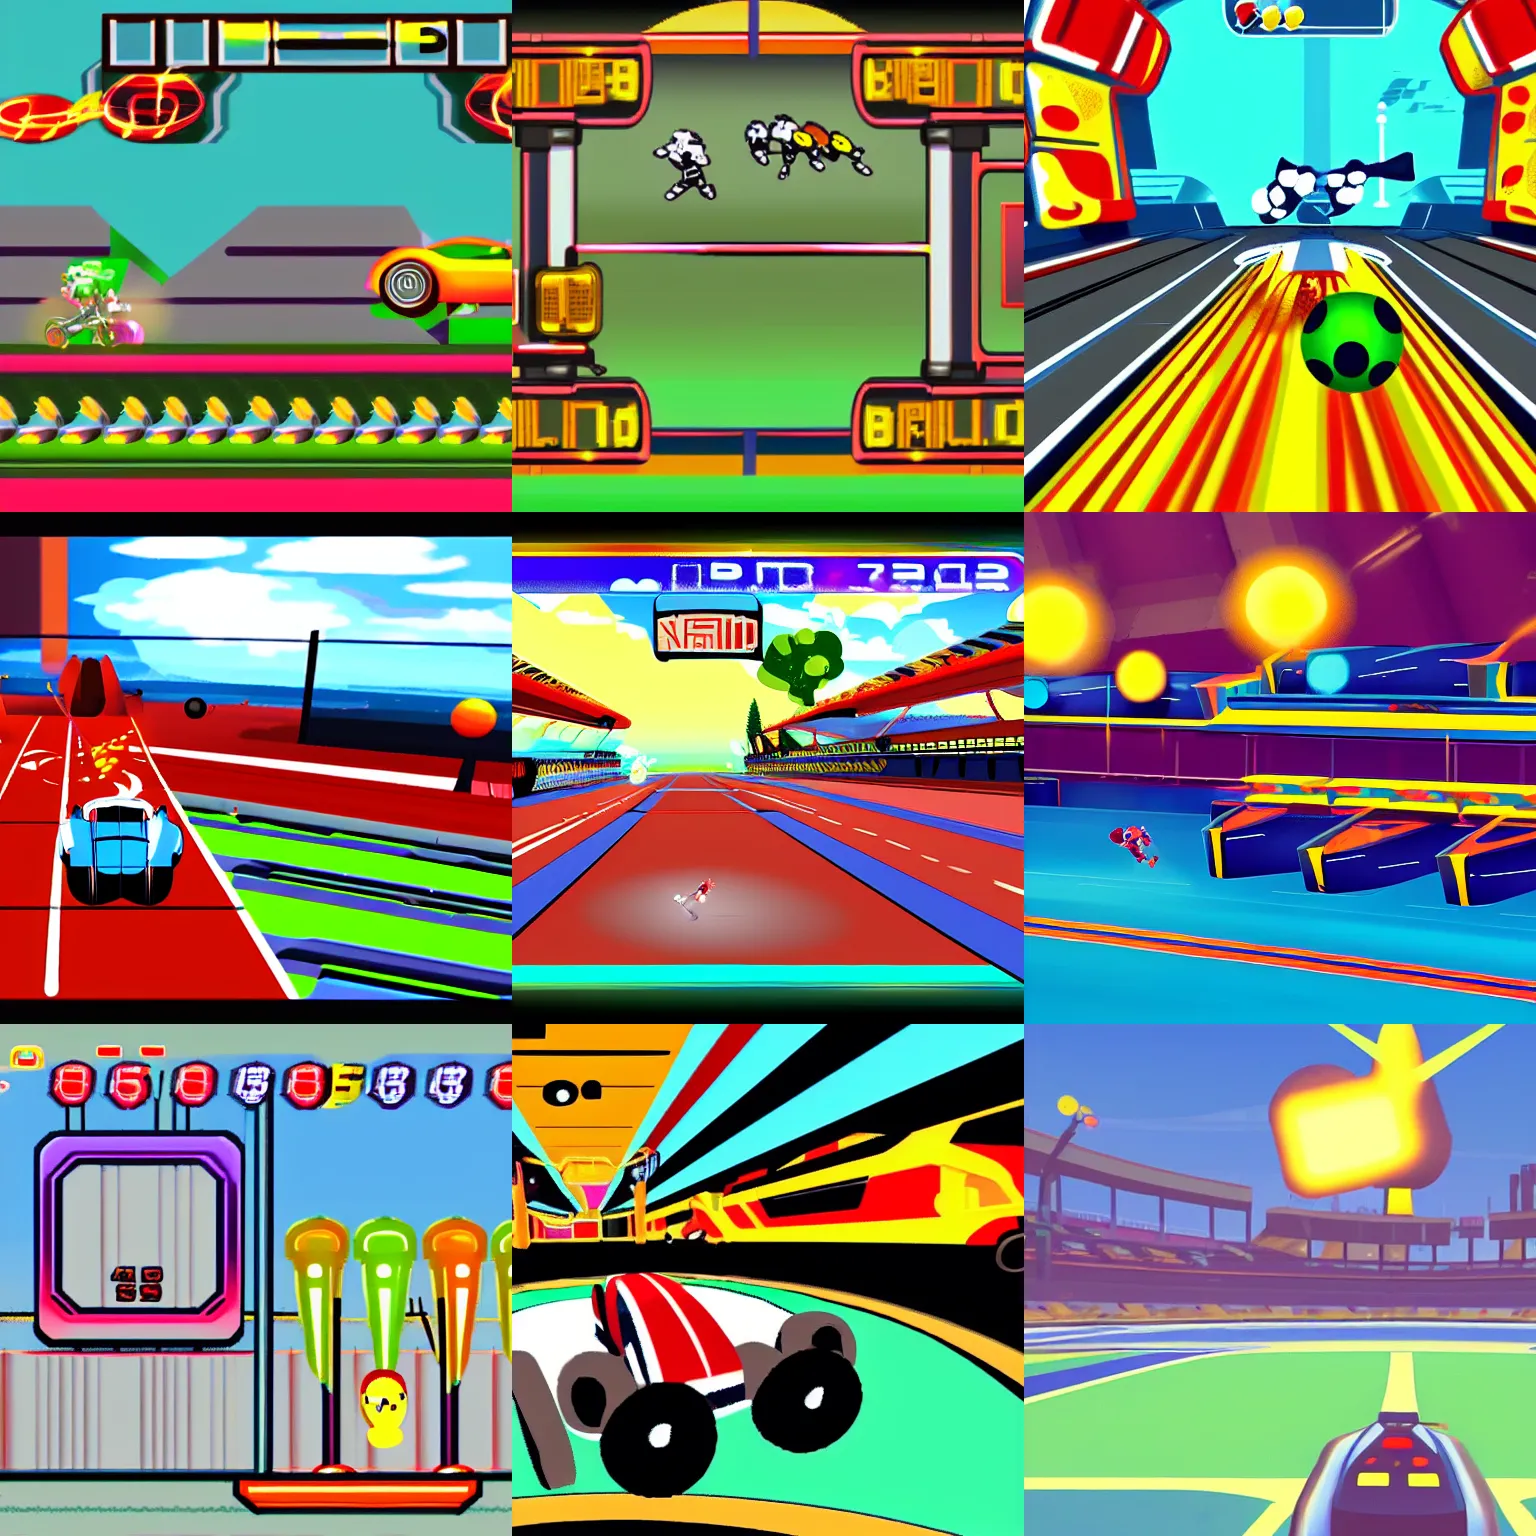 Prompt: a still from omgpop inspired ballracer game, retro, nostalgic